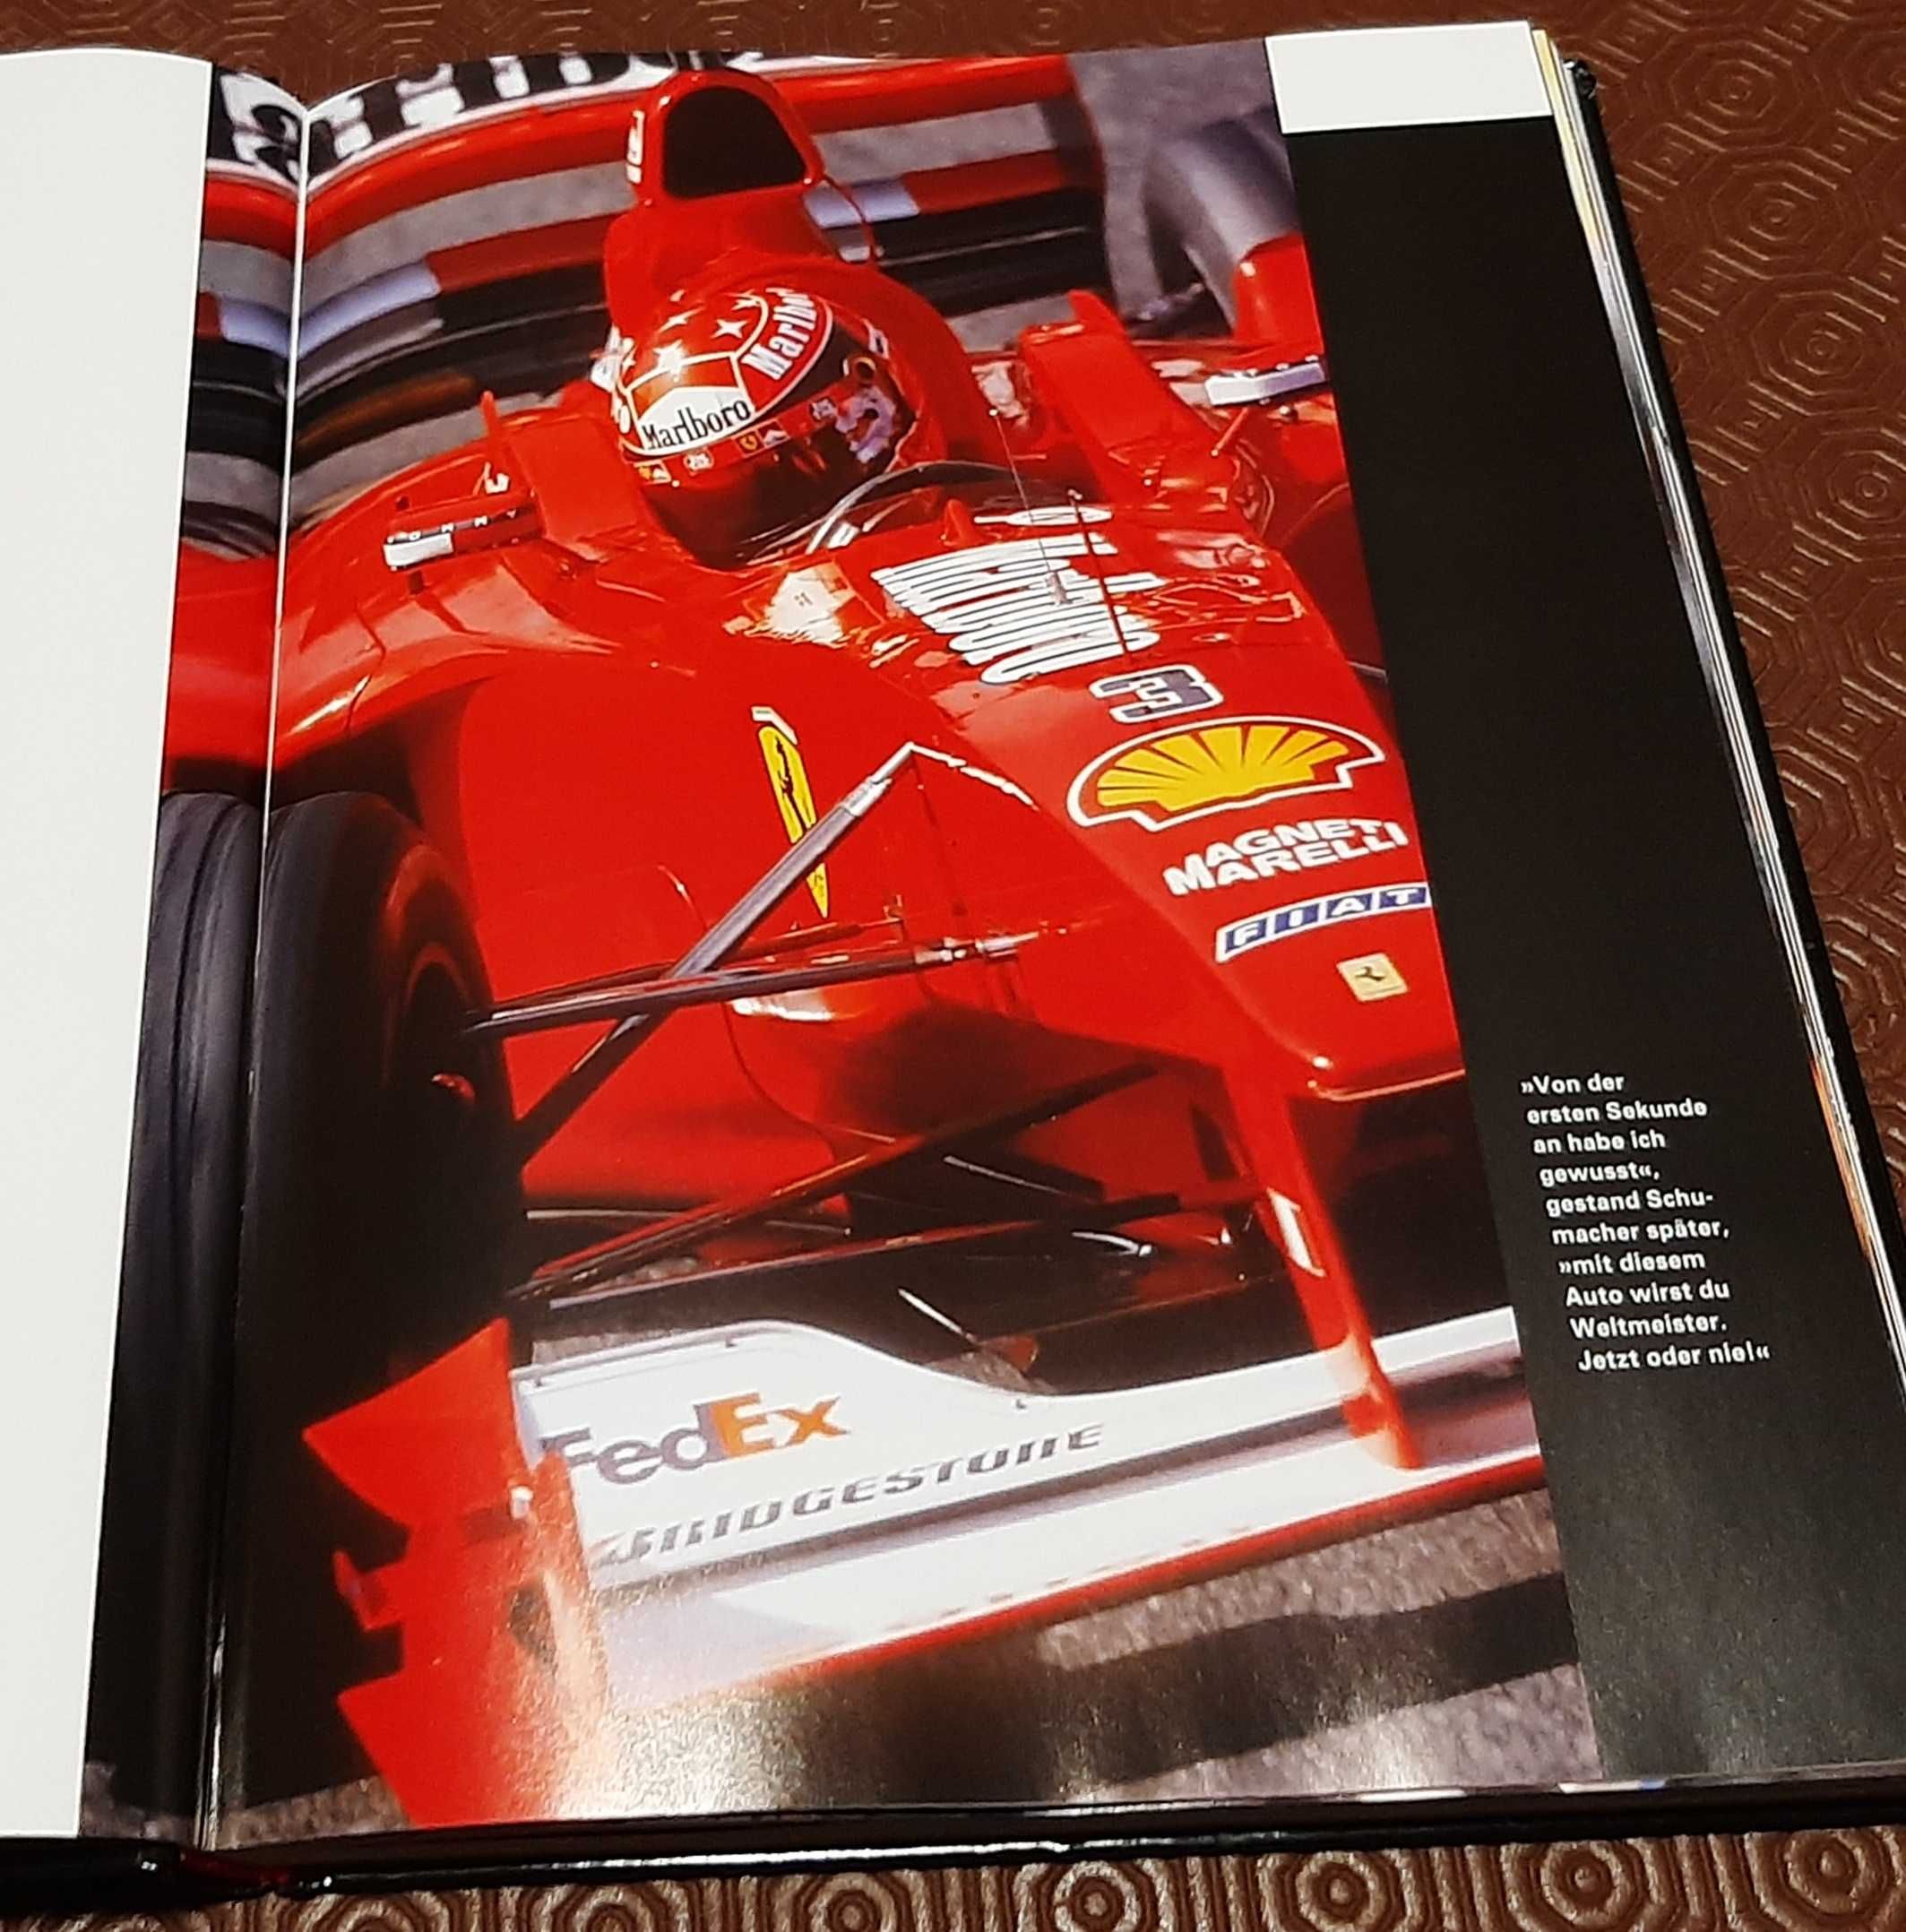 Michael Schumacher F1 livros